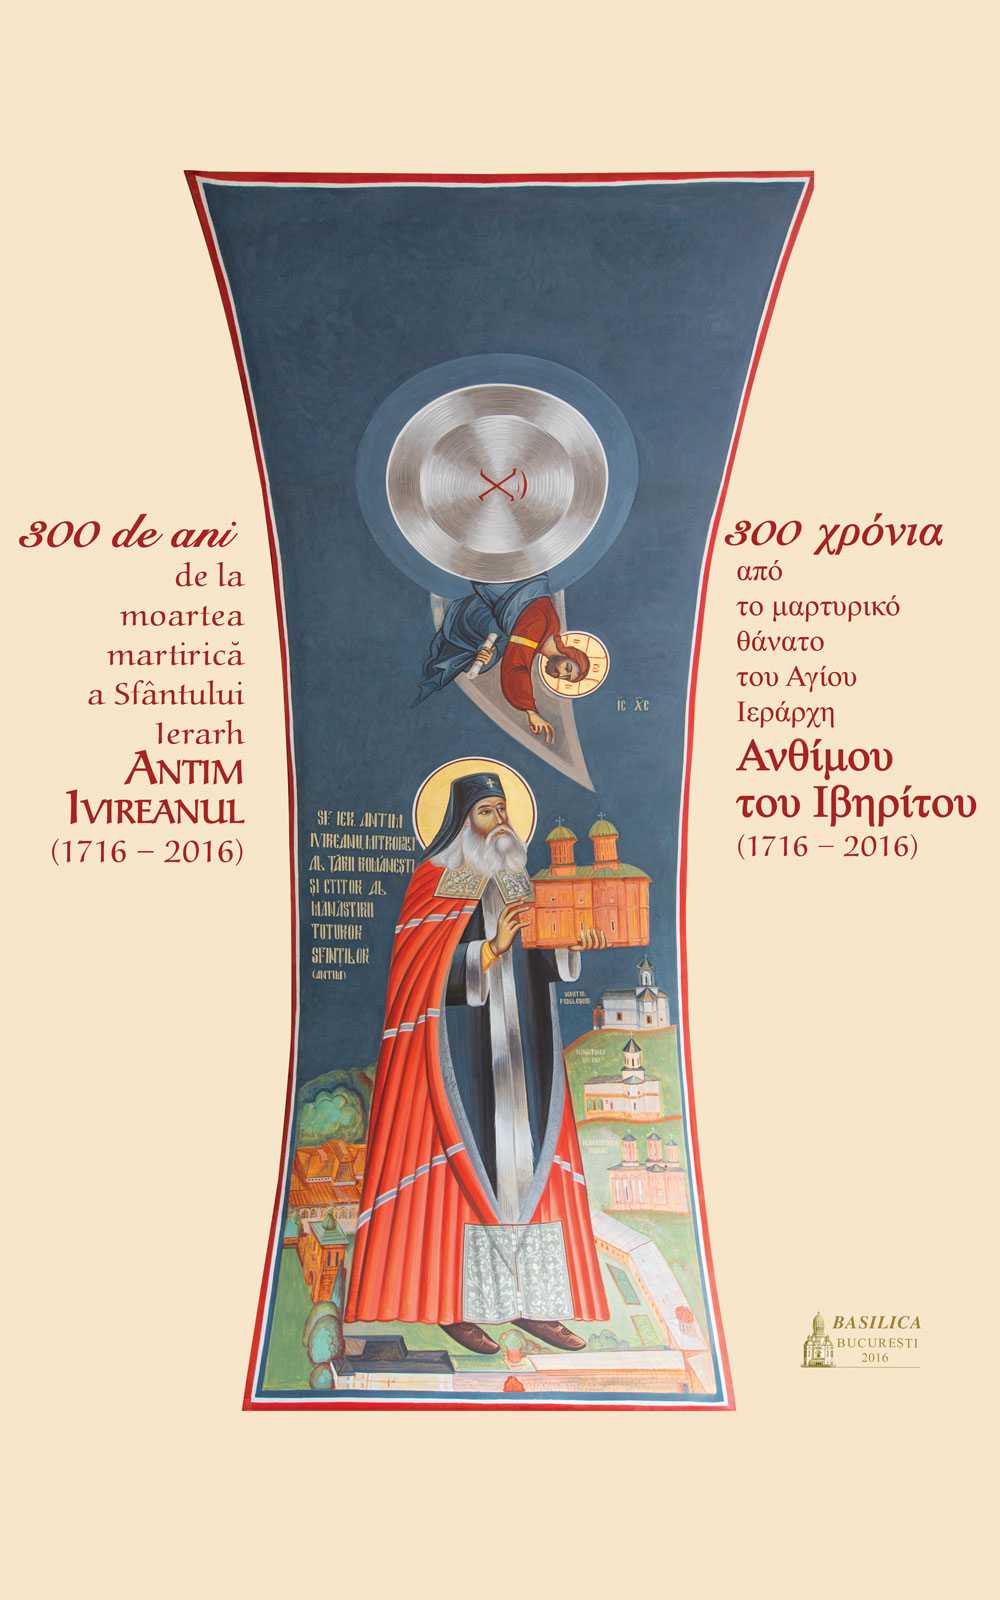 300 de ani de la moartea martirică a Sfântului Ierarh Antim Ivireanul - limba greacă